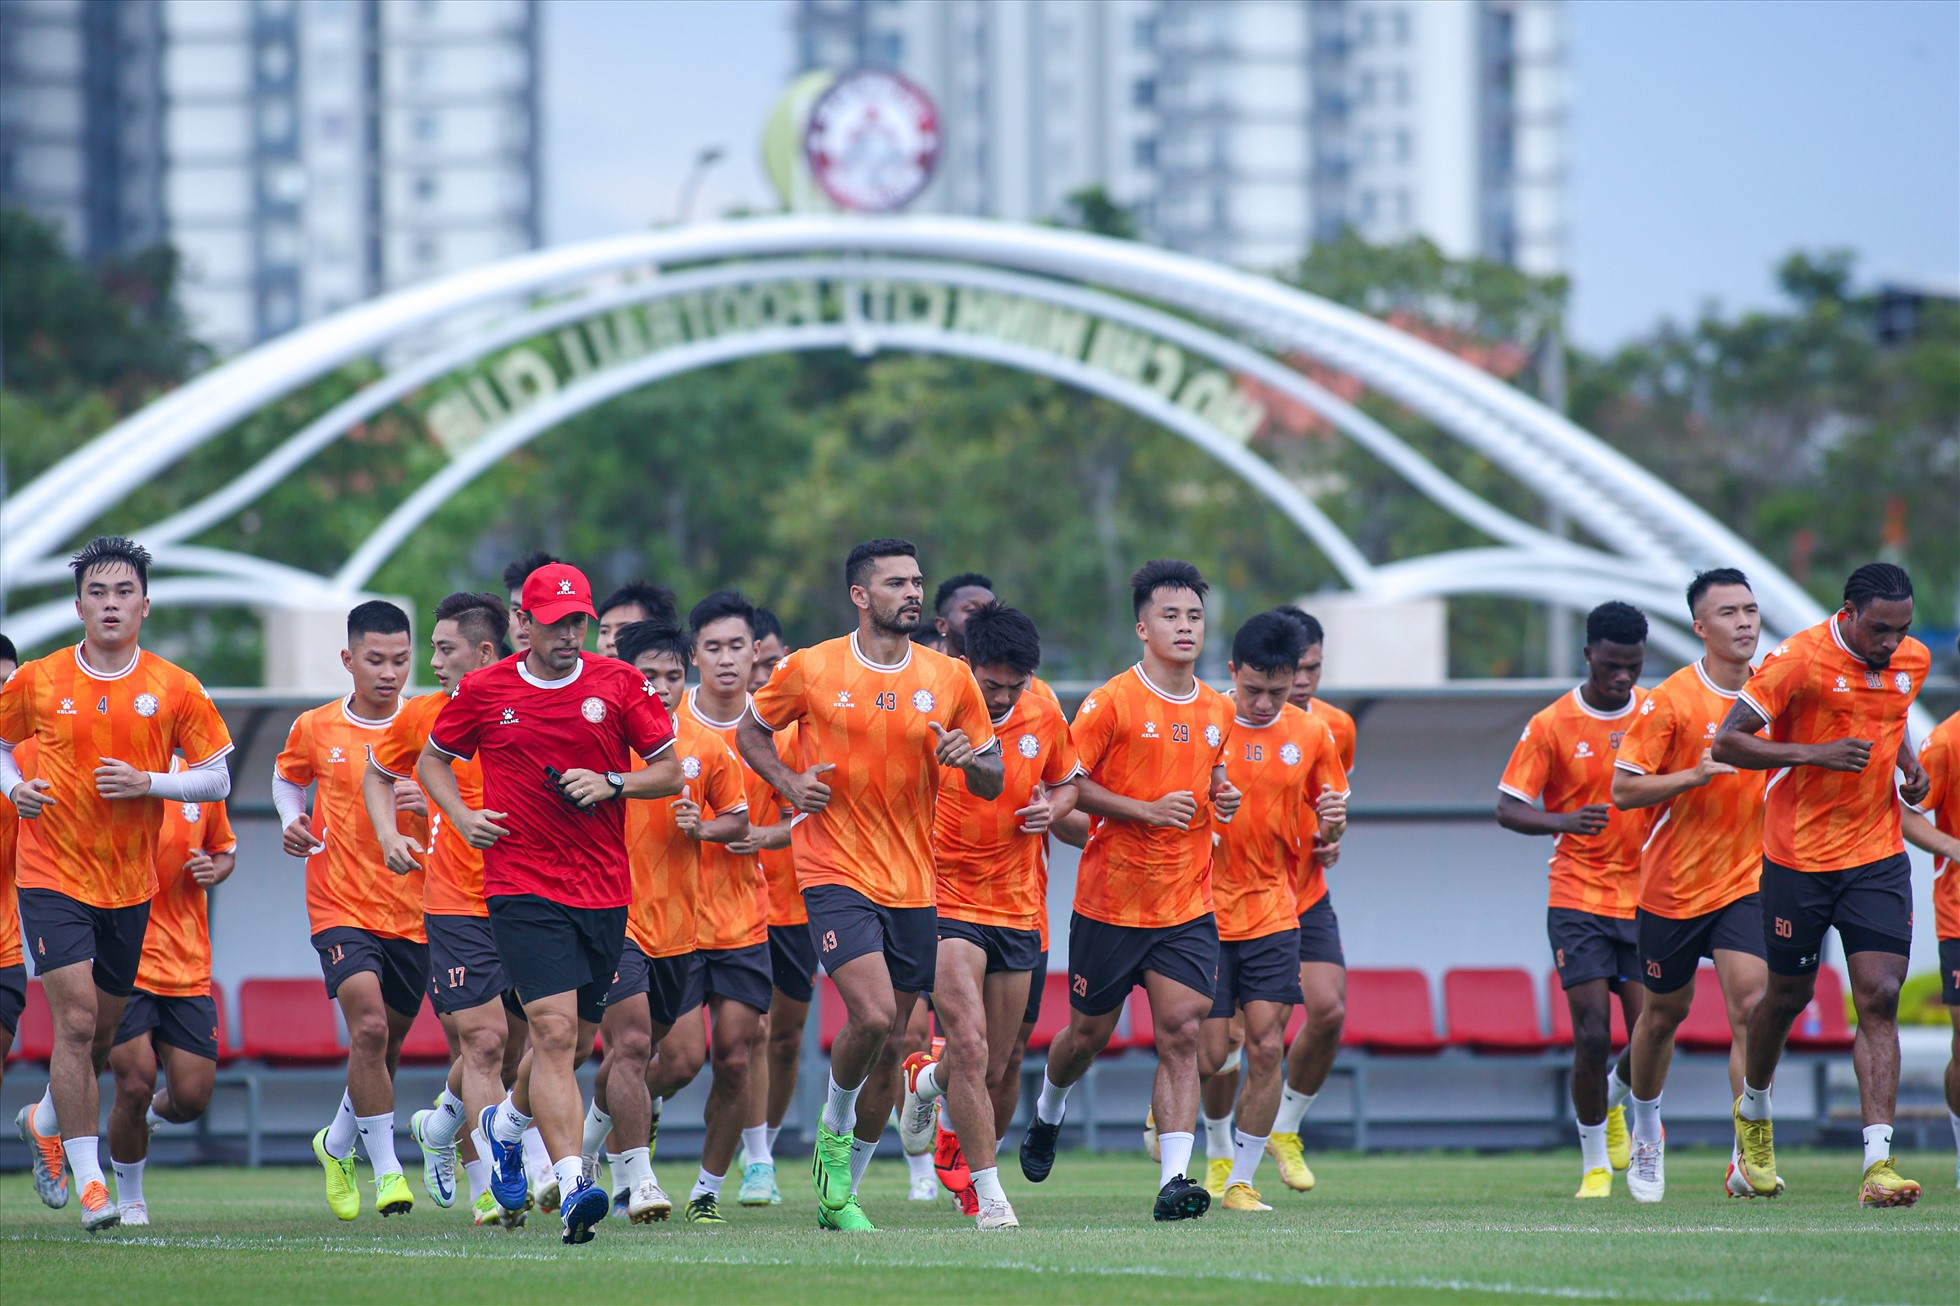 Vòng tiếp theo, câu lạc bộ TPHCM sẽ có chuyến làm khách khó khăn đến sân của Hoàng Anh Gia Lai vào ngày 9.10. Huấn luyện viên Vũ Tiến Thành đặt mục tiêu giành ít nhất 1 điểm trong trận đấu này.